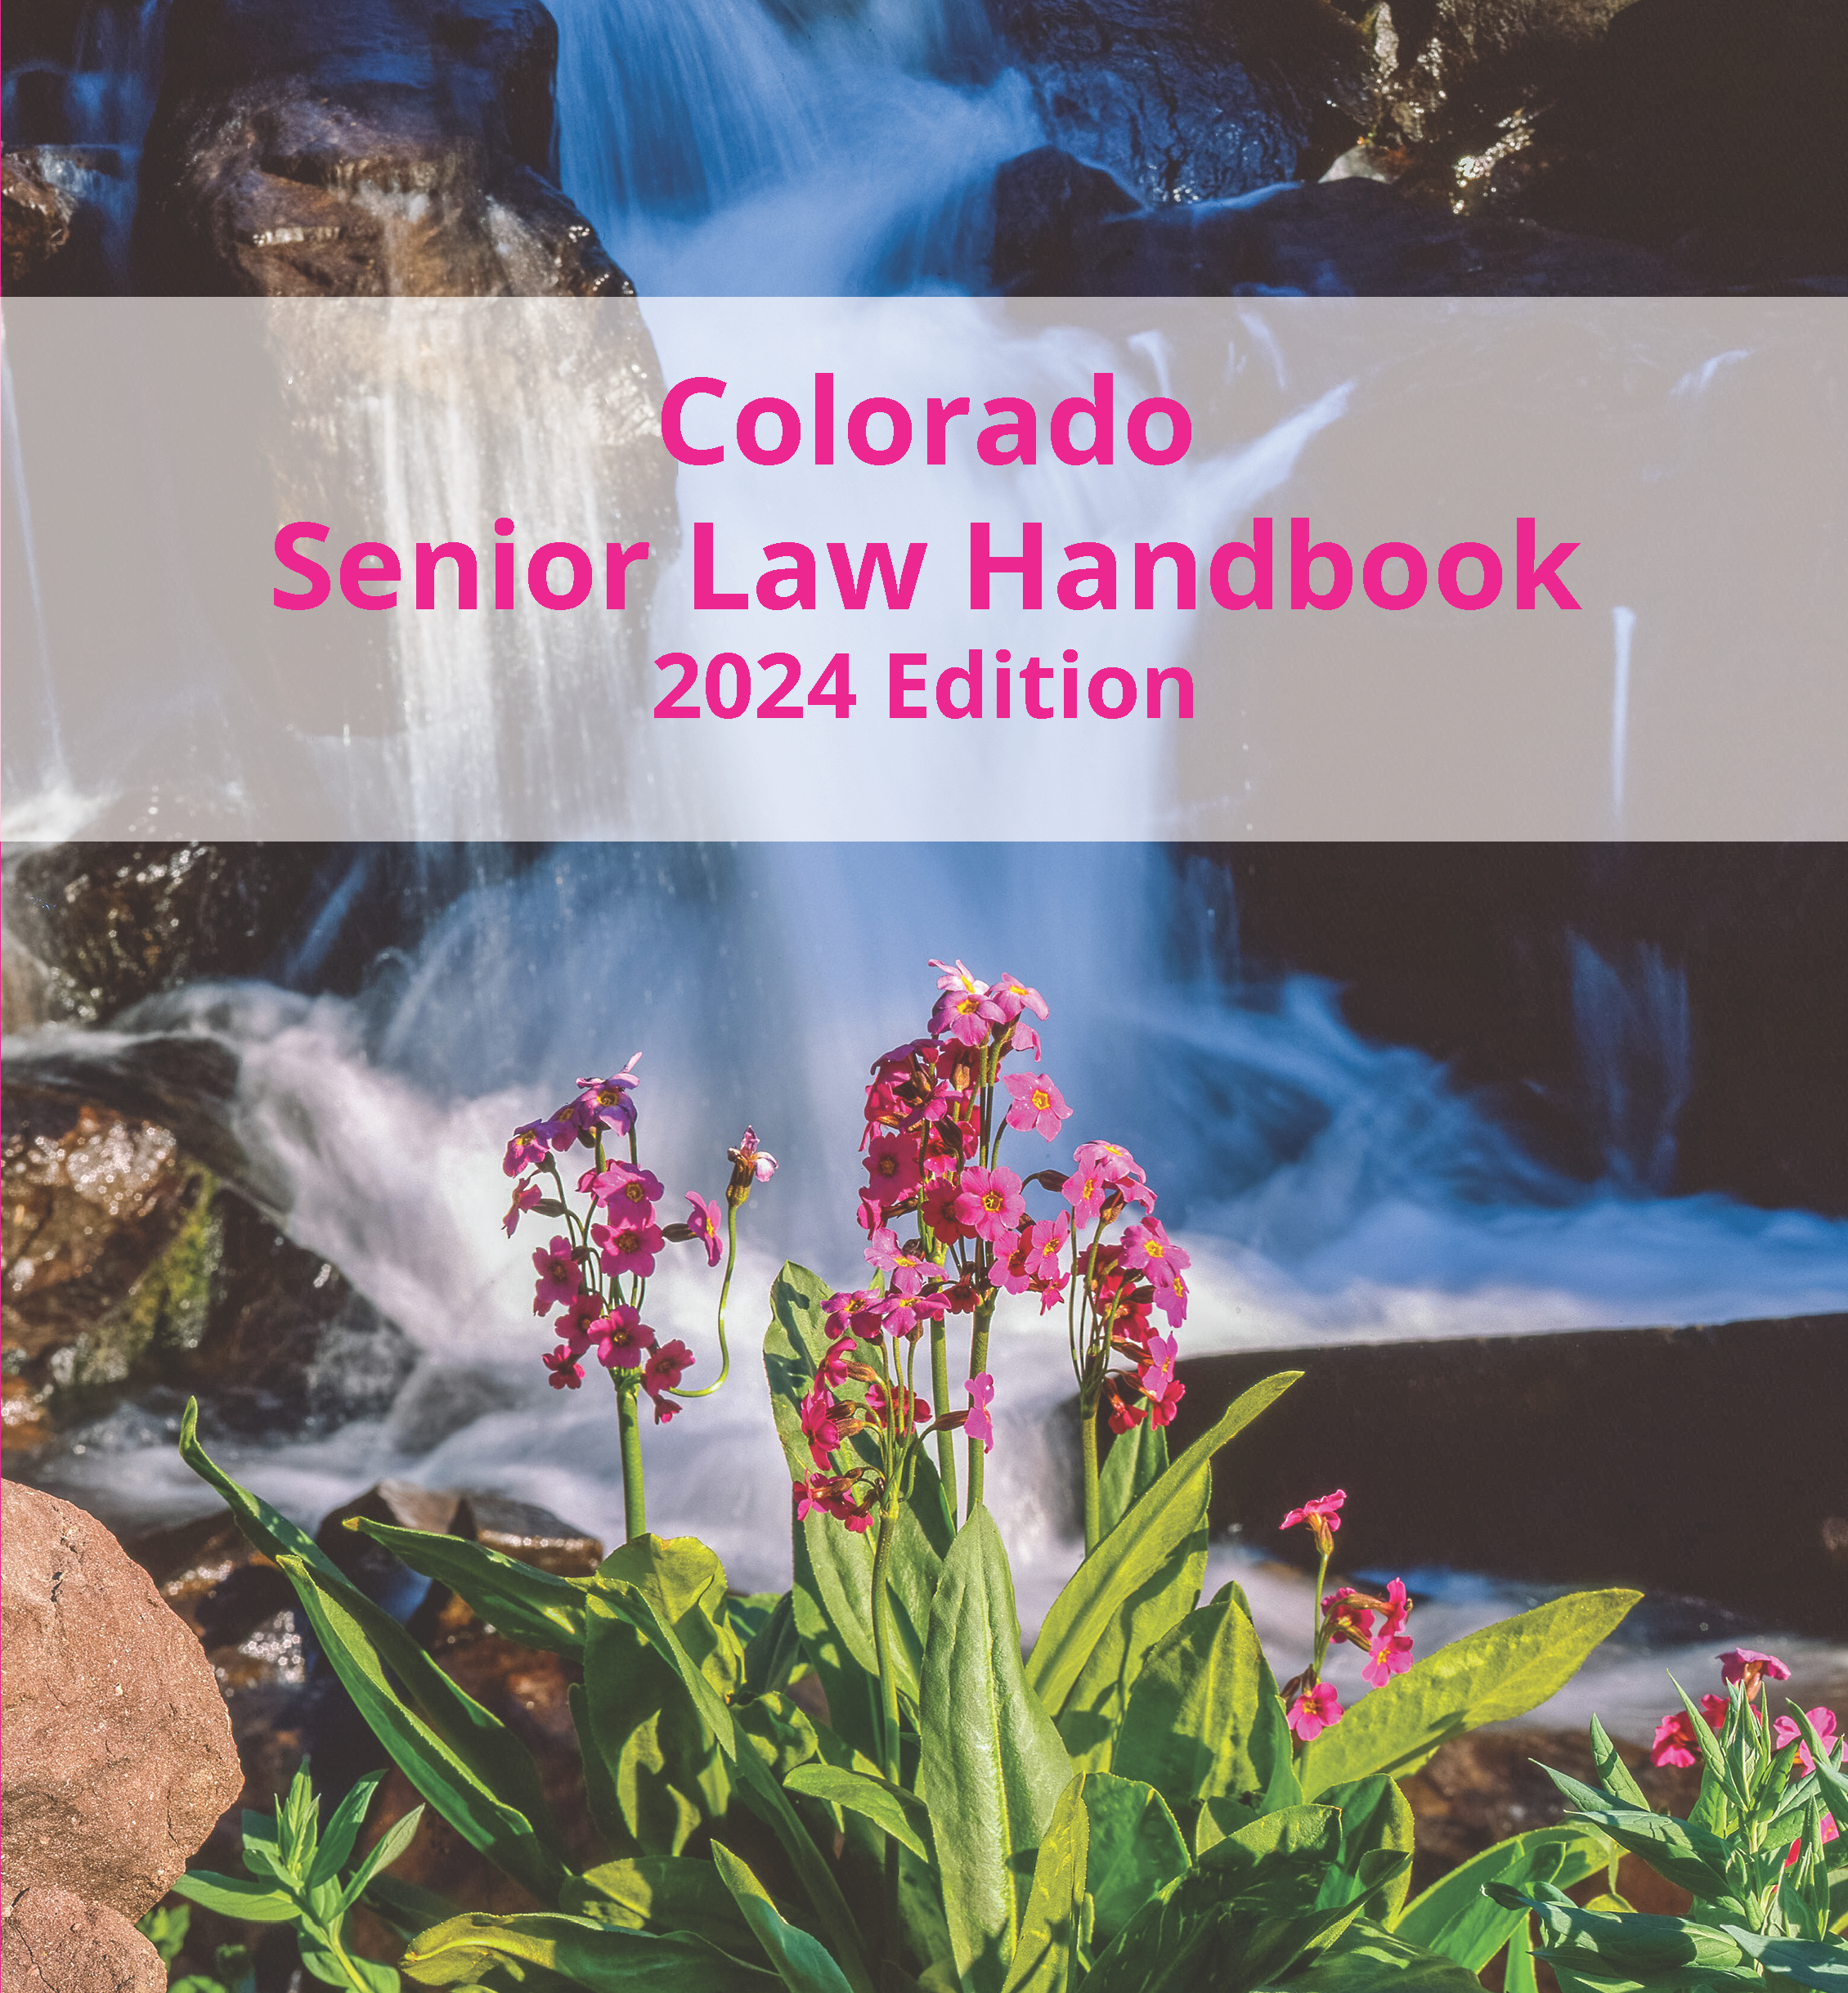 Colorado Senior Law Handbook